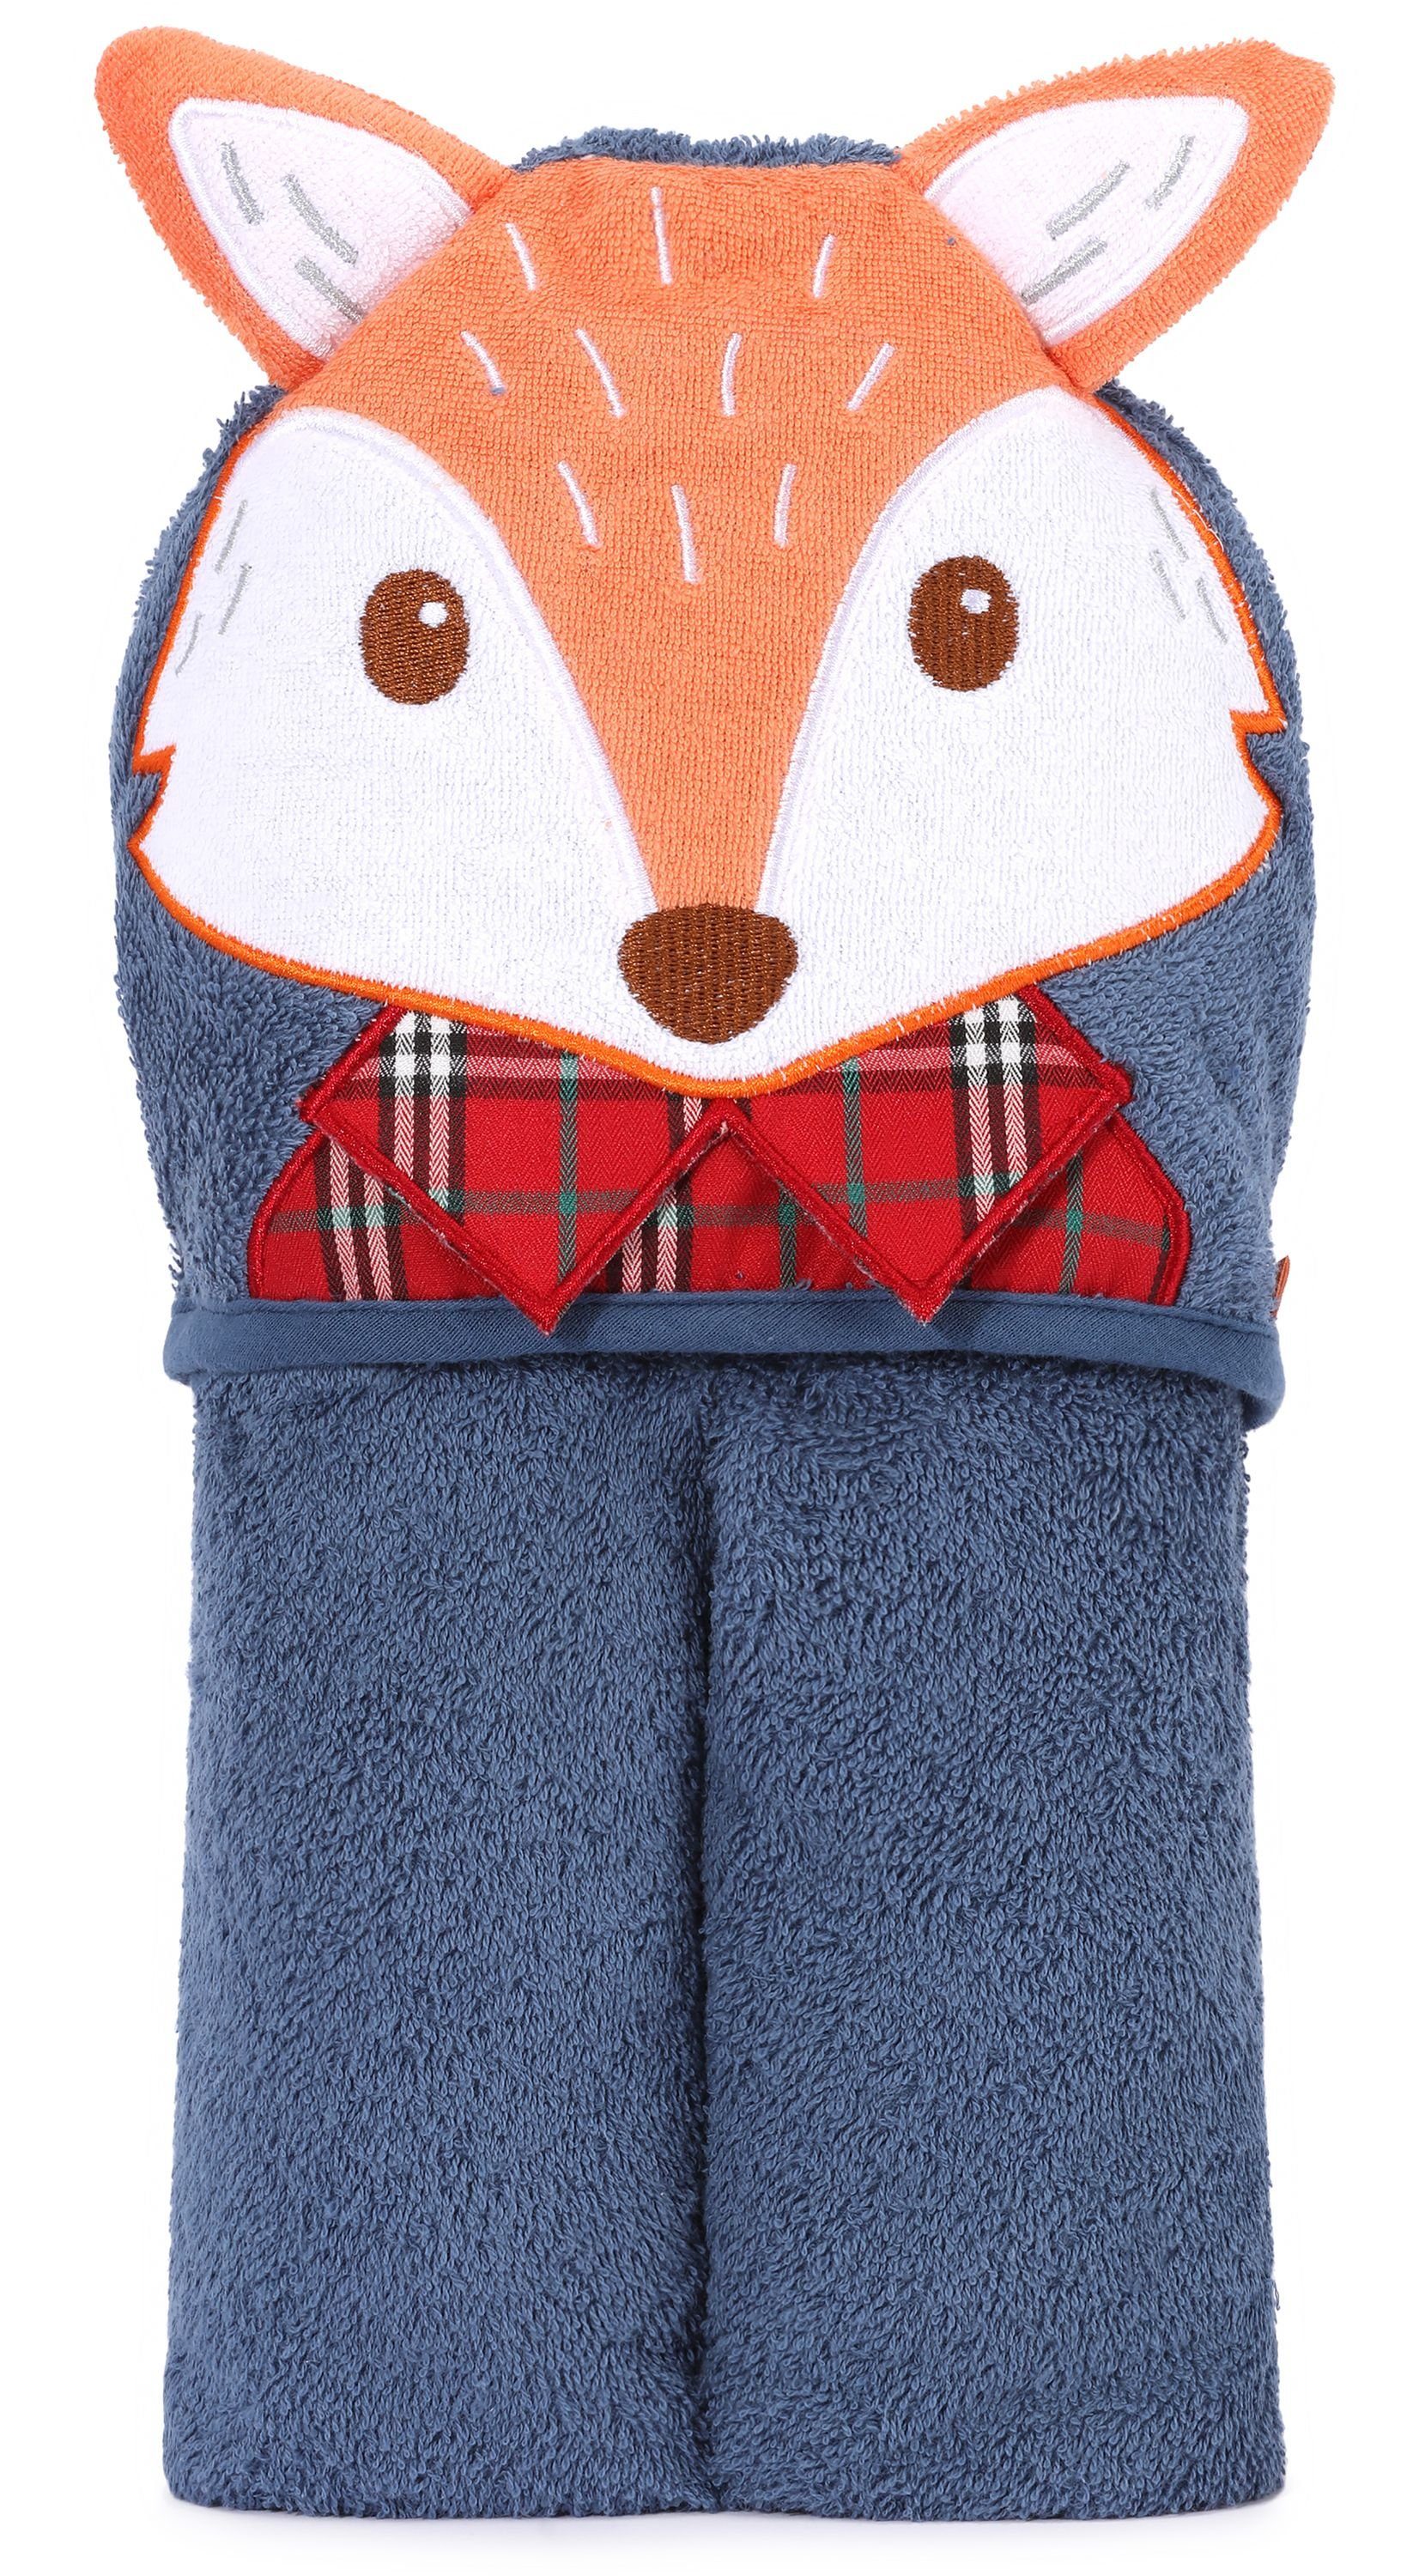 Babyhandtuch Handtücher aus (1-St) 95cm Fuchs Be x Marineblau BE20-272-BBL, 95cm - Kapuzenhandtuch Mammy Baumwolle Frottee